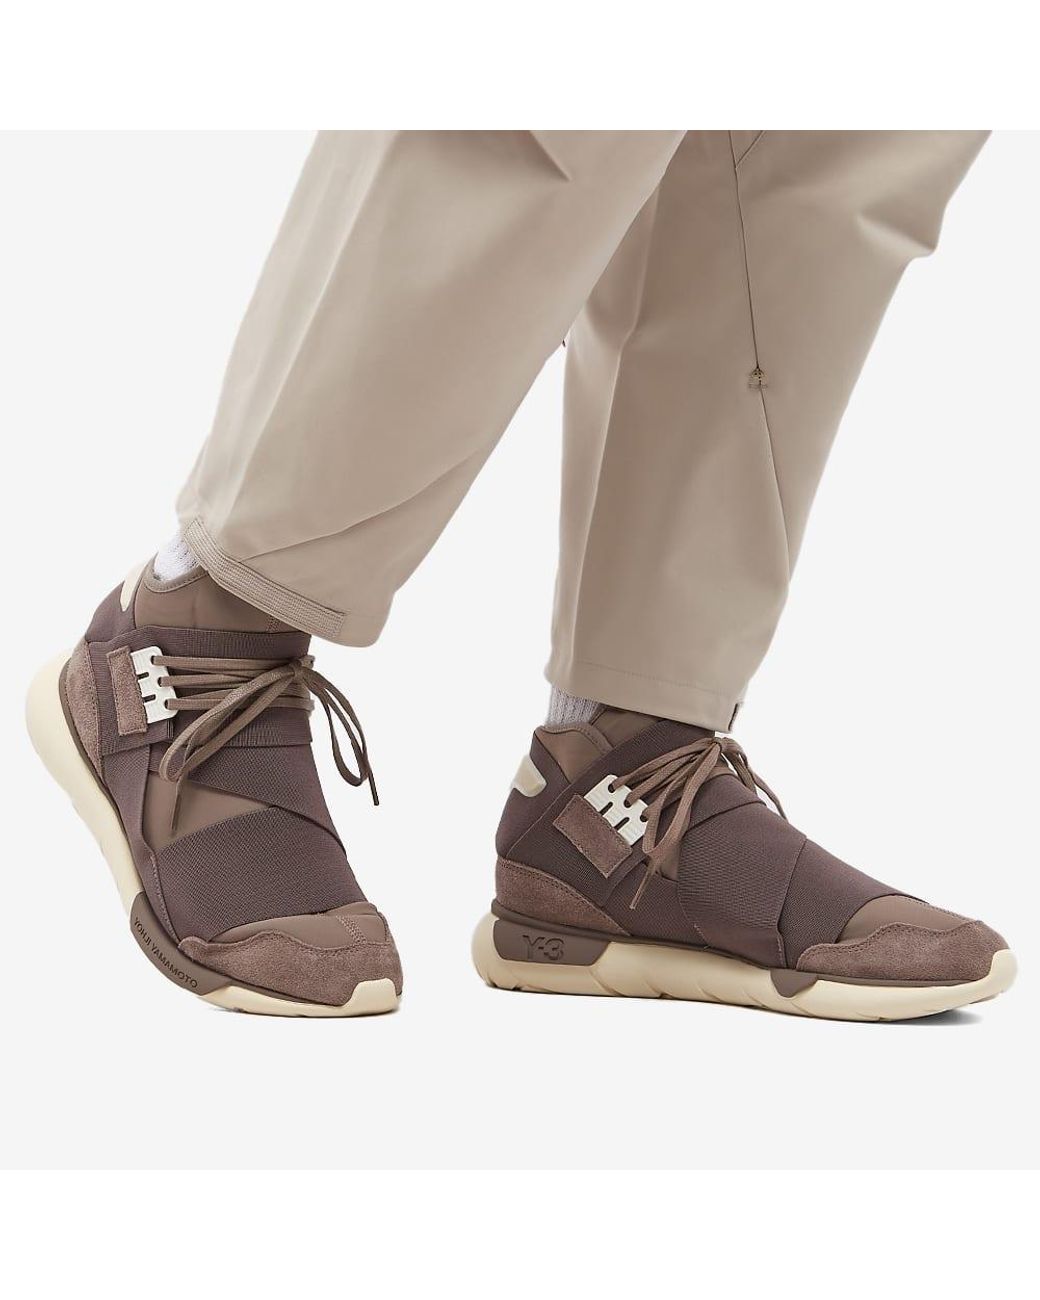 Y-3 Qasa Sneakers in Brown for Men | Lyst UK